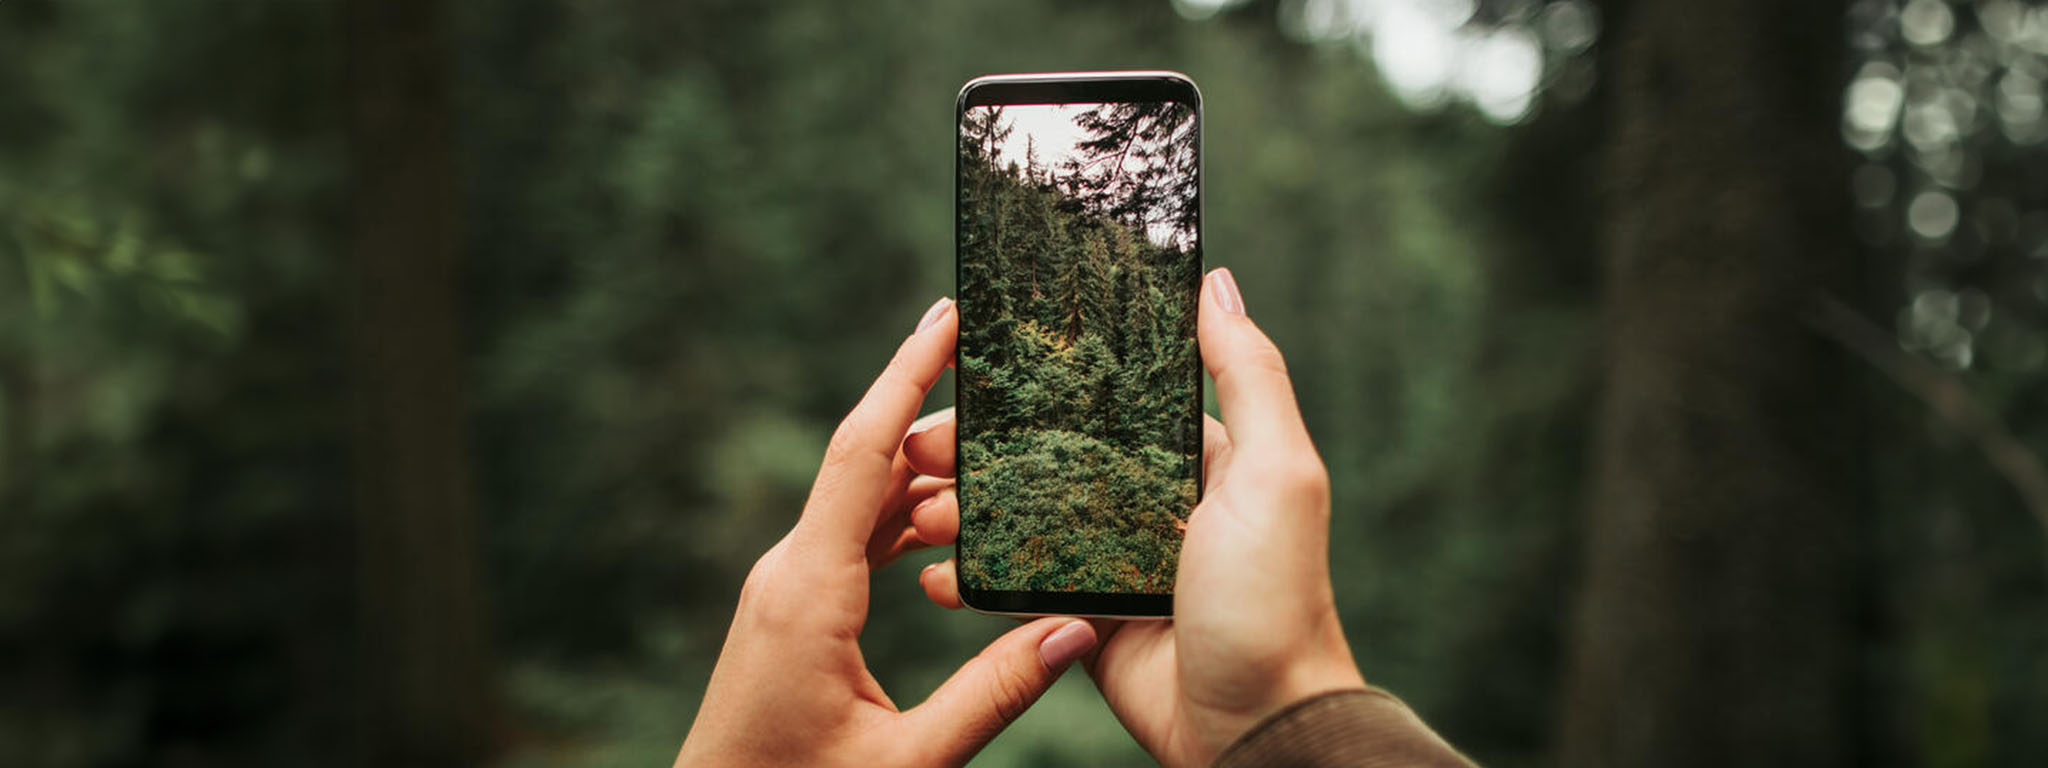 一名女性拿著手機，正在拍攝美麗的森林景觀。